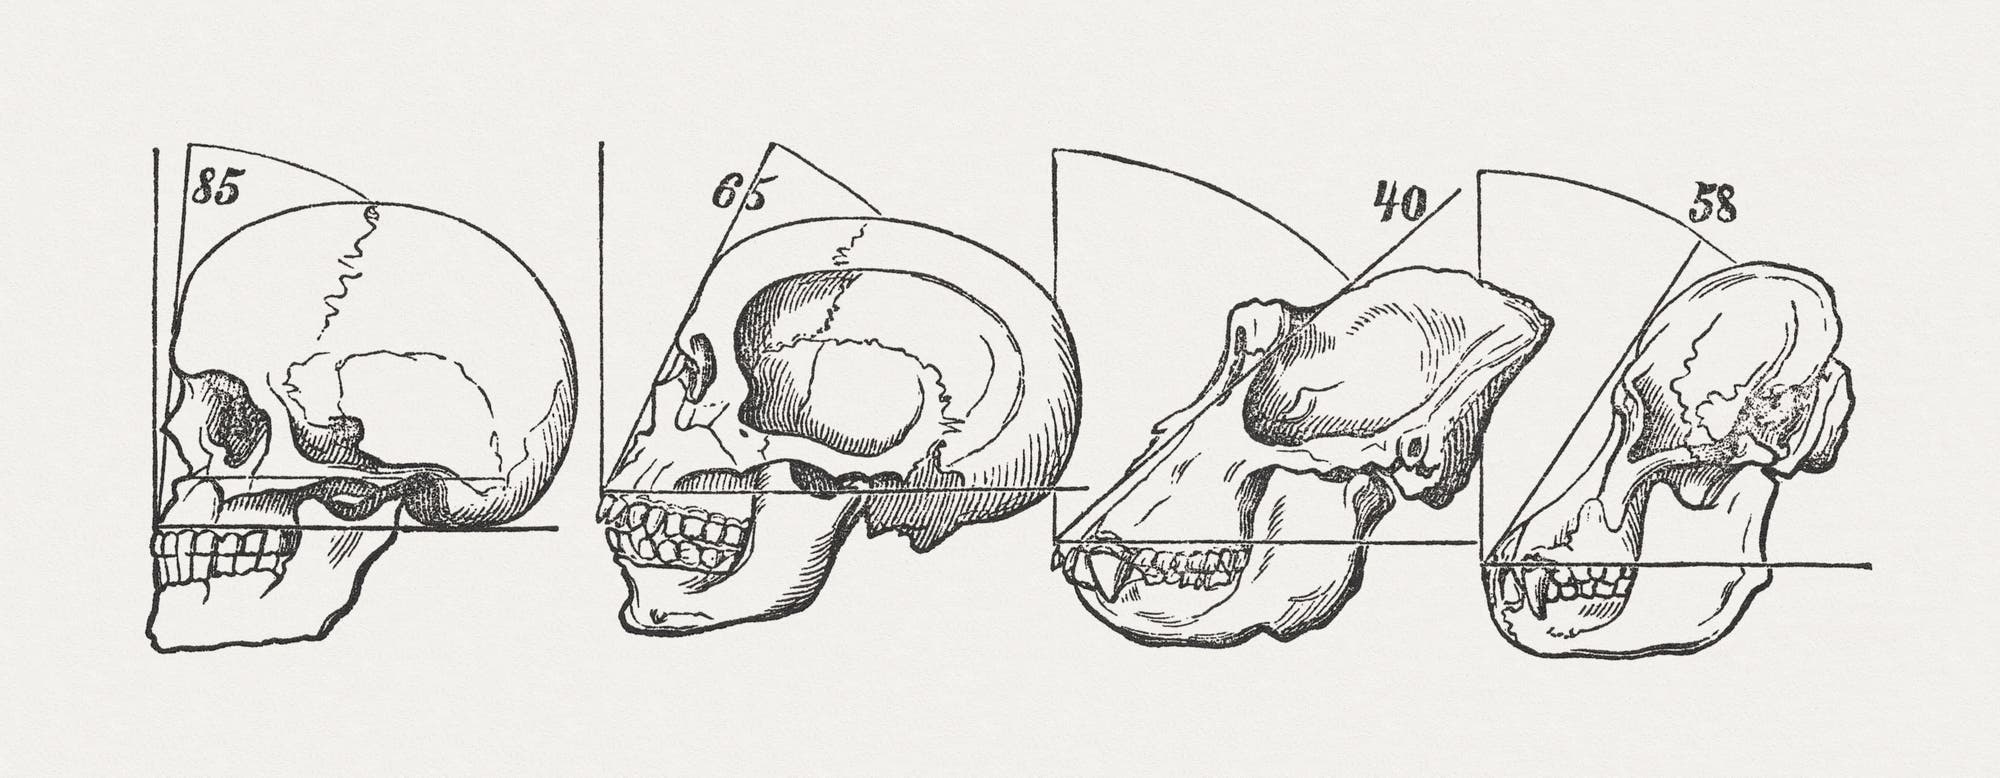 Wissenschaftliche Skizzen der Schädel von Primaten, veröffentlicht 1884